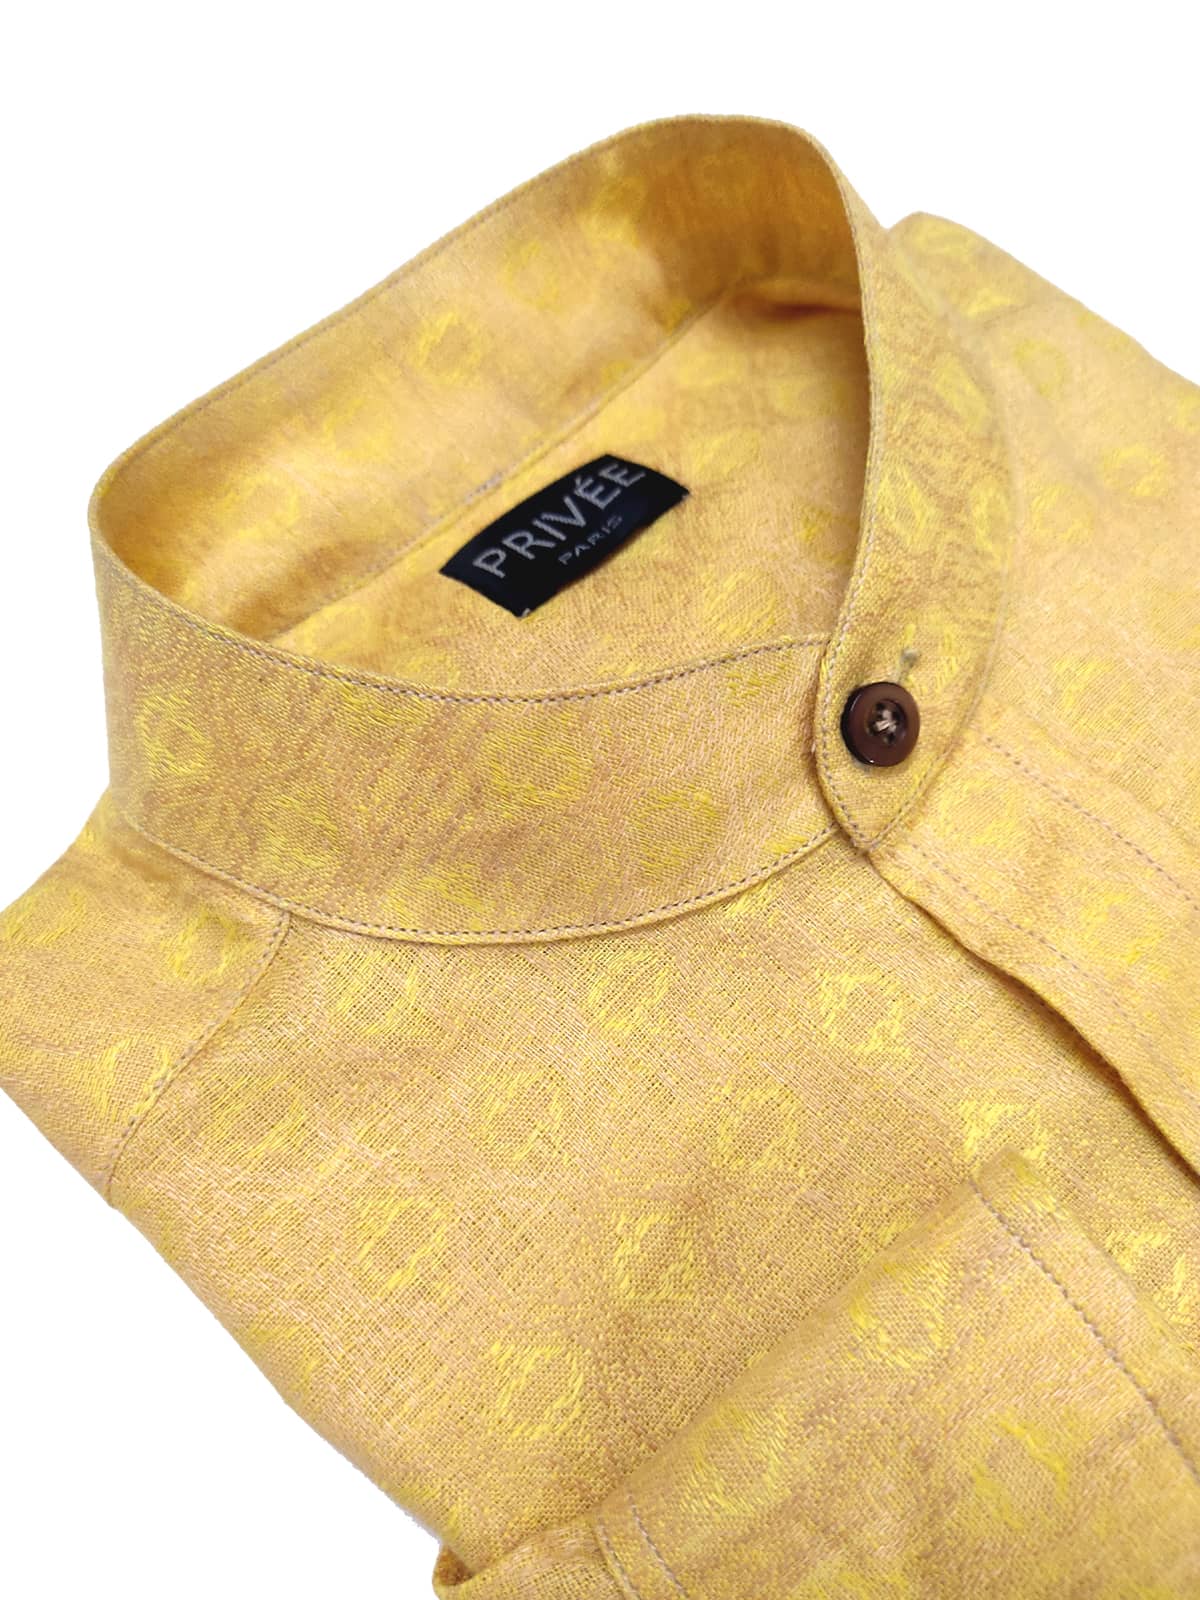 Golden Yellow Linen Shirt